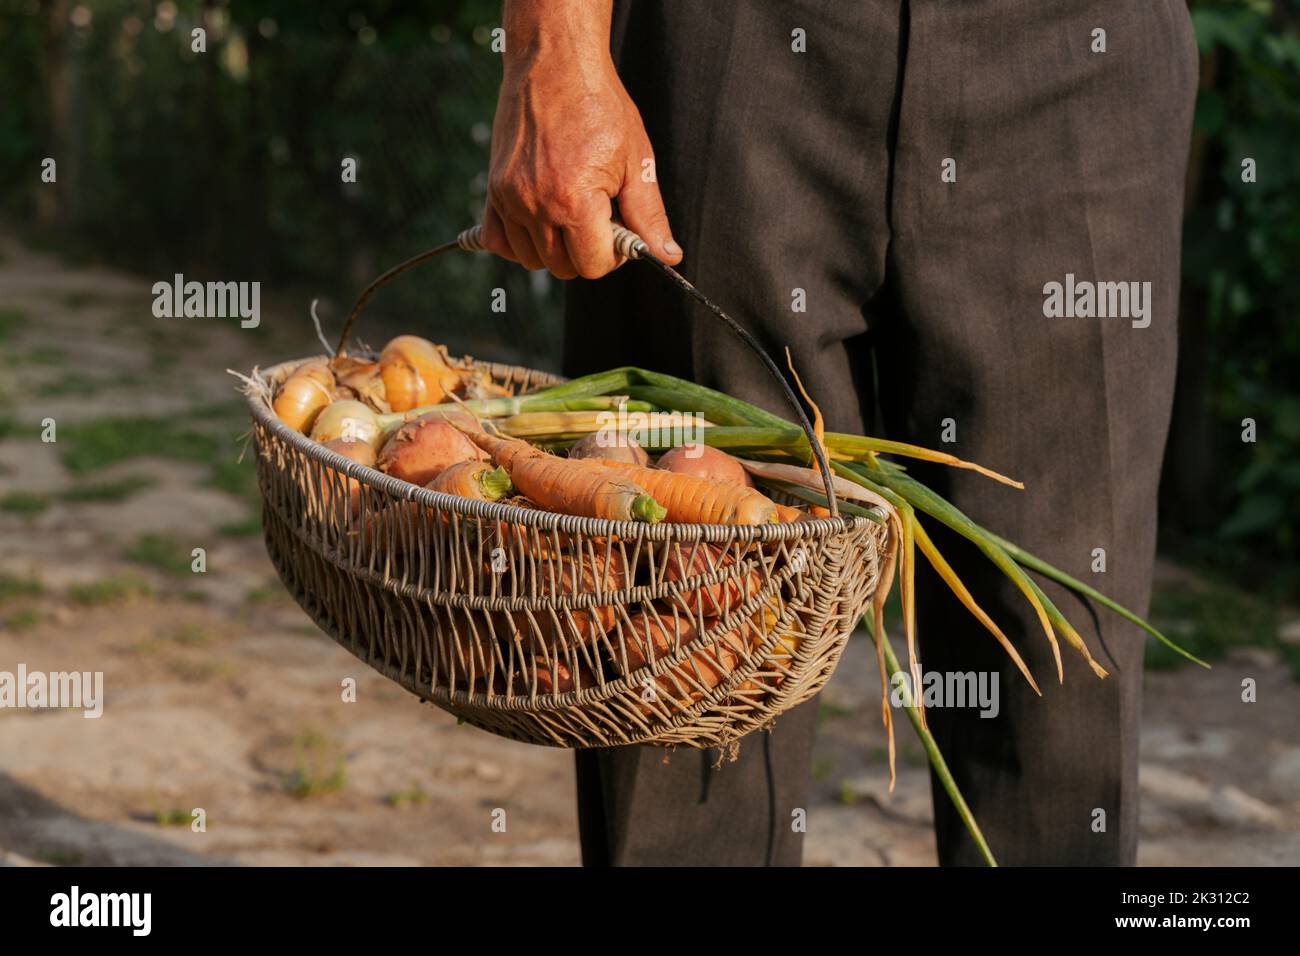 Fermier tenant le panier avec les légumes Banque D'Images